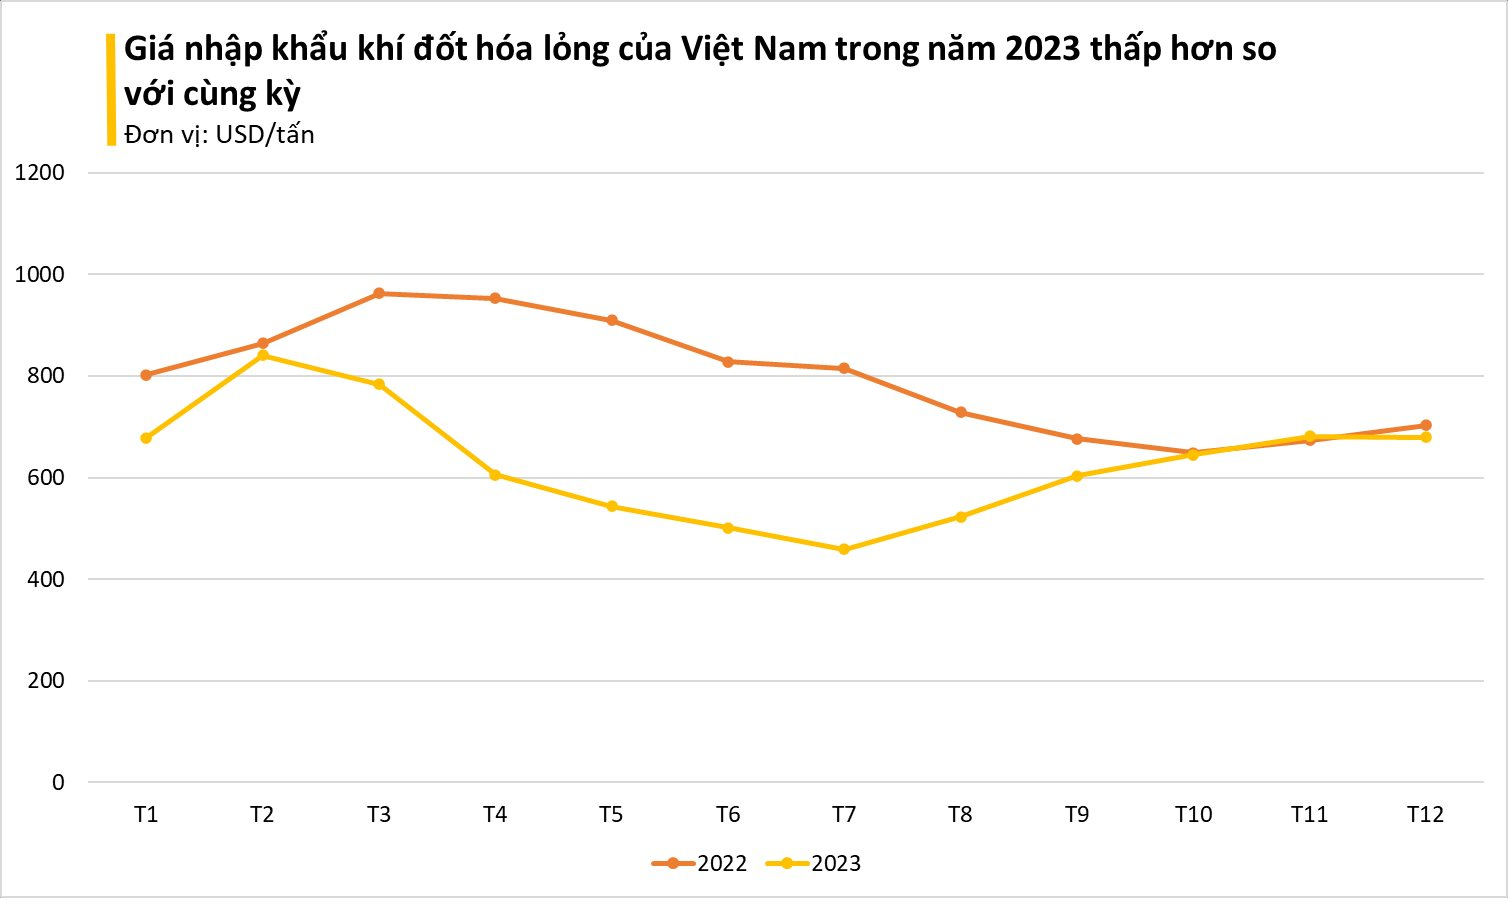 Giá rẻ bất ngờ, một mặt hàng từ Malaysia ồ ạt tràn vào Việt Nam, nhập khẩu tăng đột biến 3 chữ số trong năm 2023- Ảnh 1.